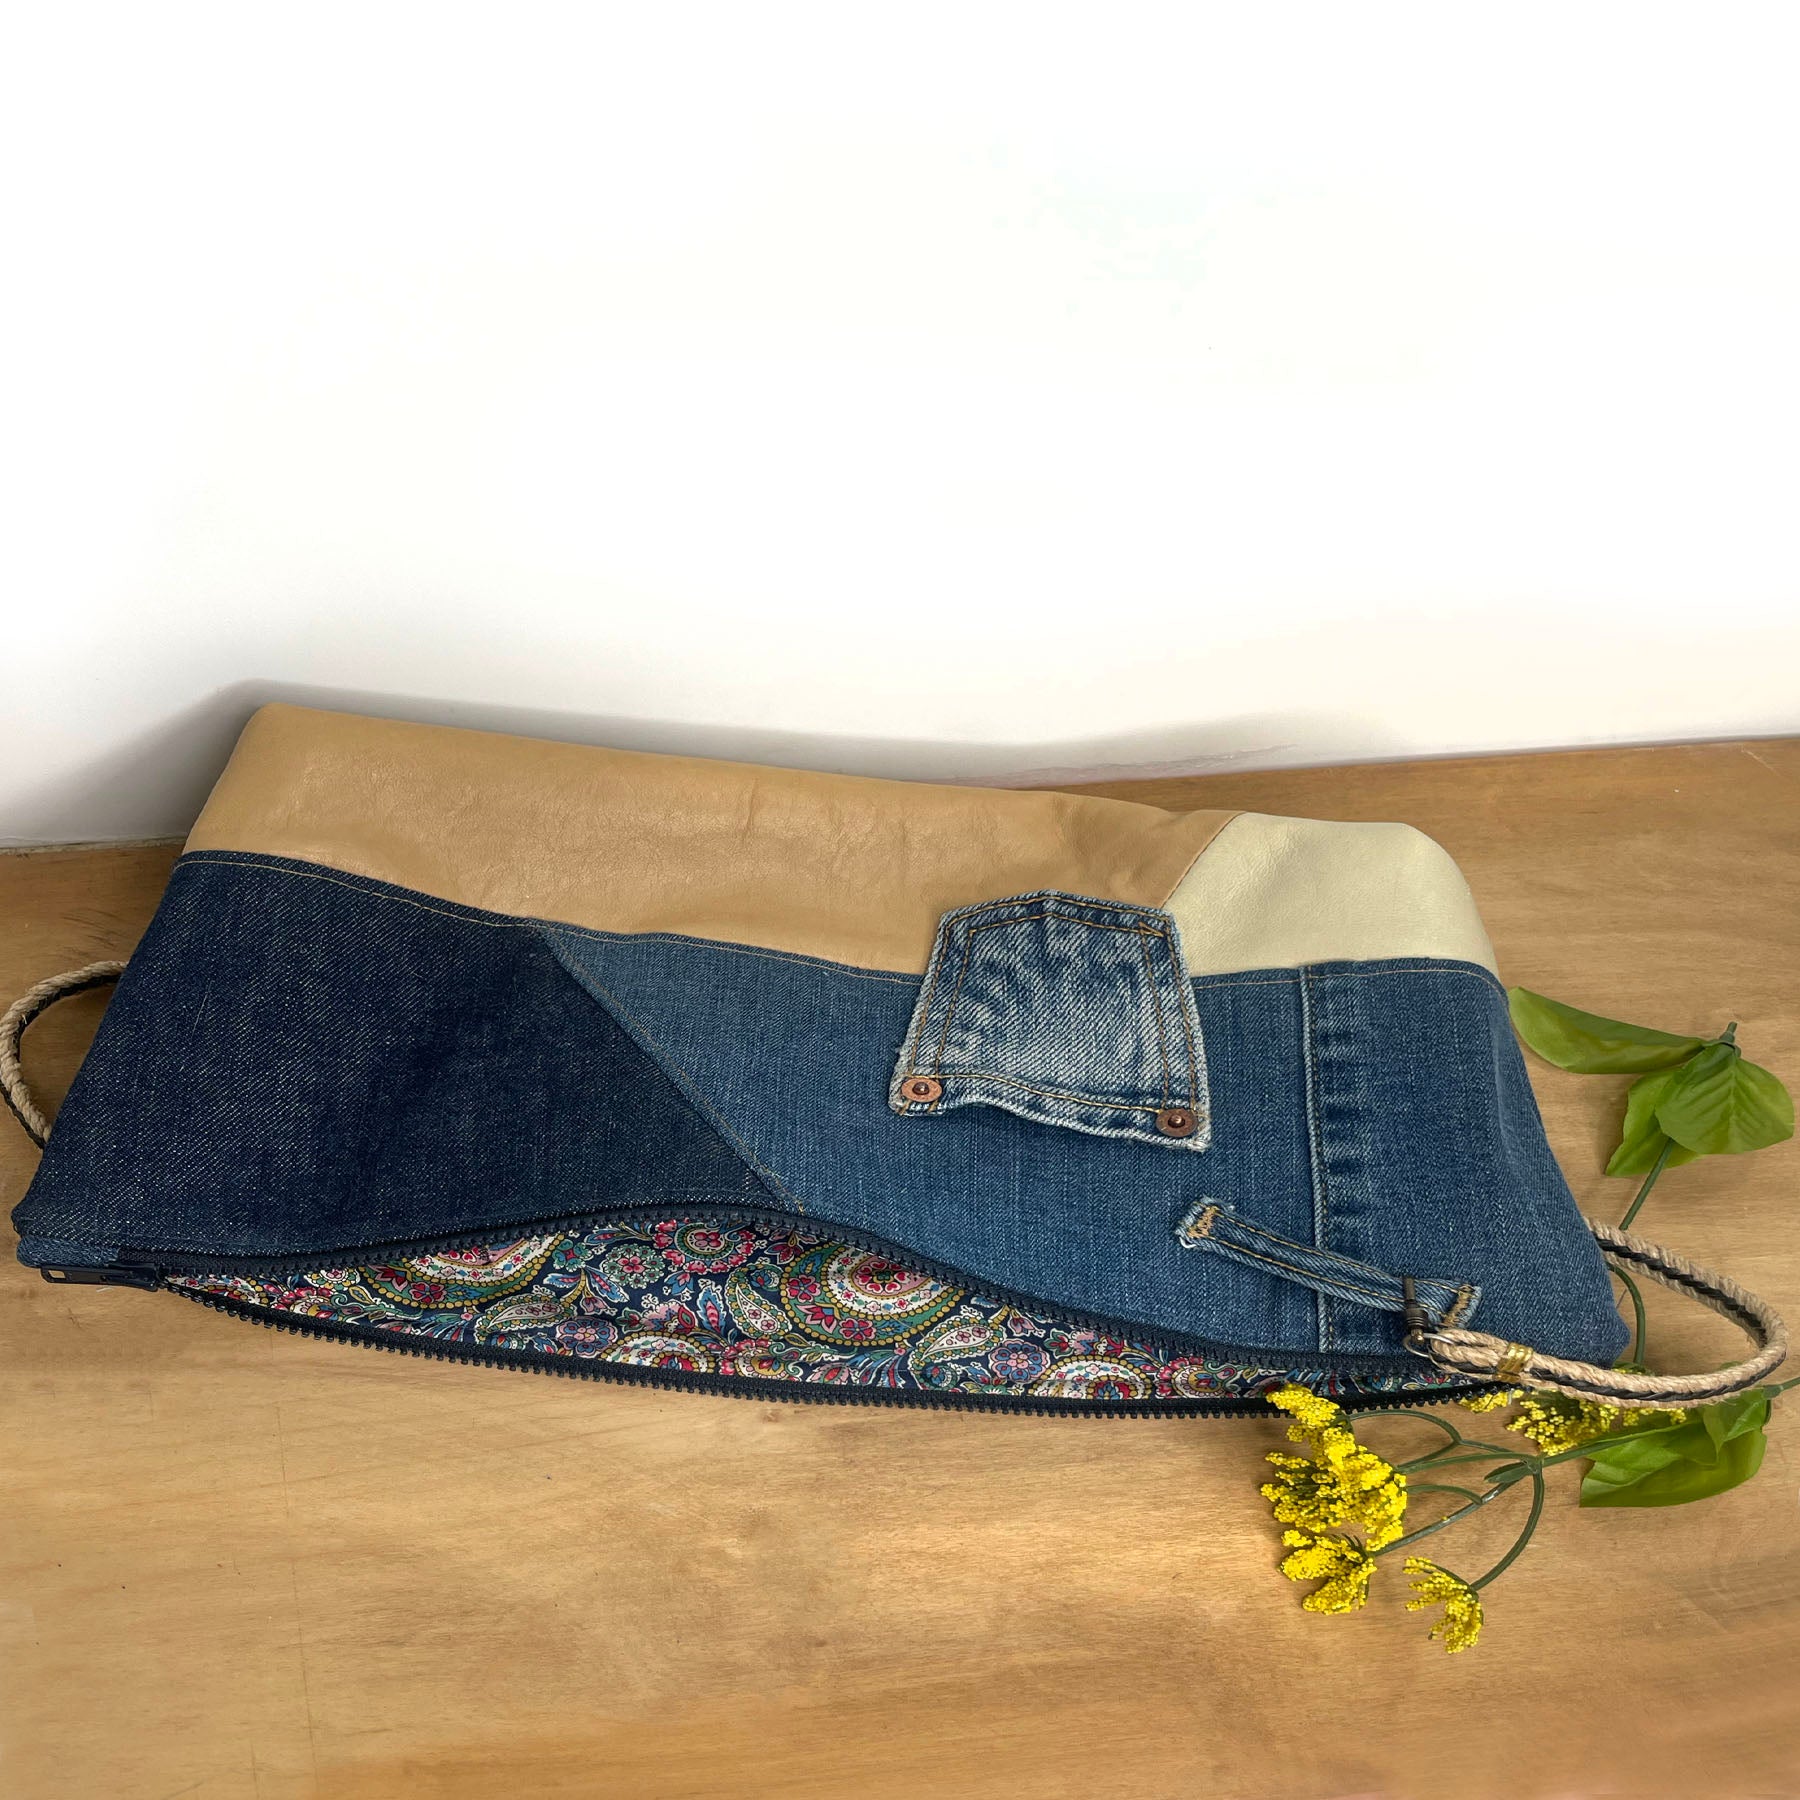 Upcycled Denim Jeans Clutch Shoulder Bag Handbag Purse With 